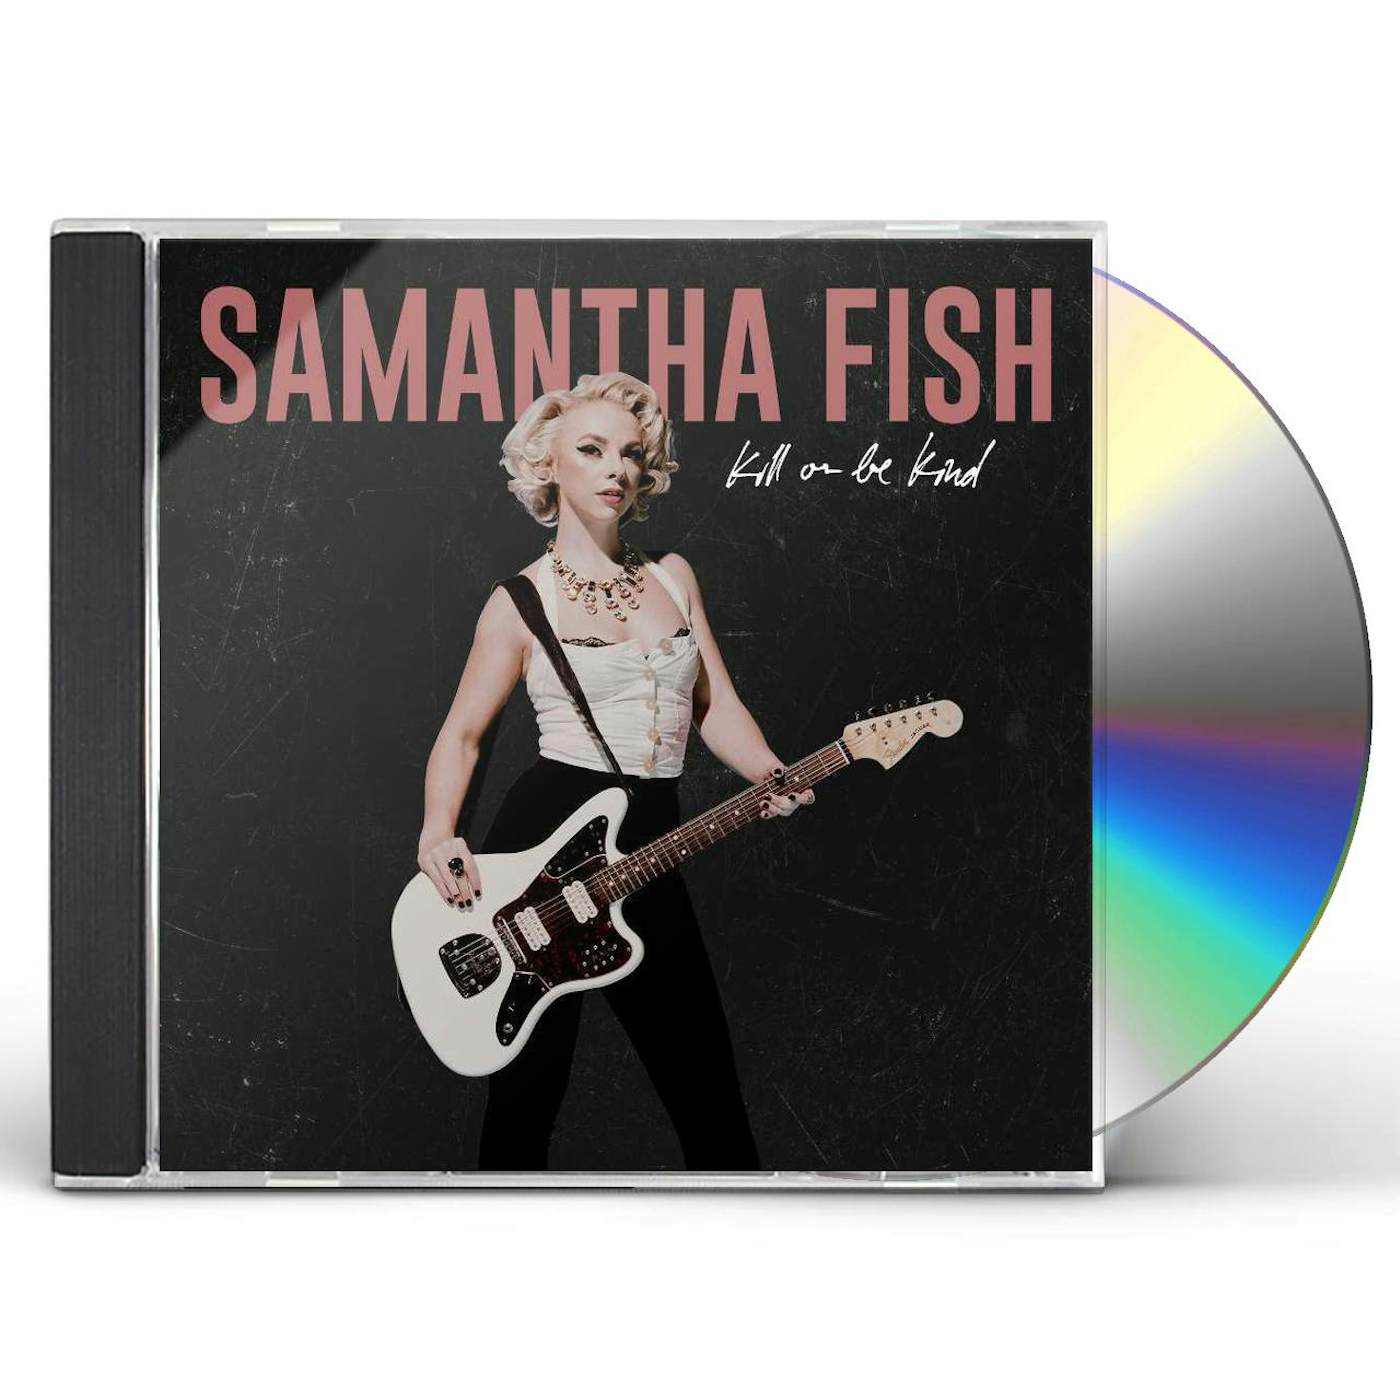 Samantha Fish KILL OR BE KIND (X) CD